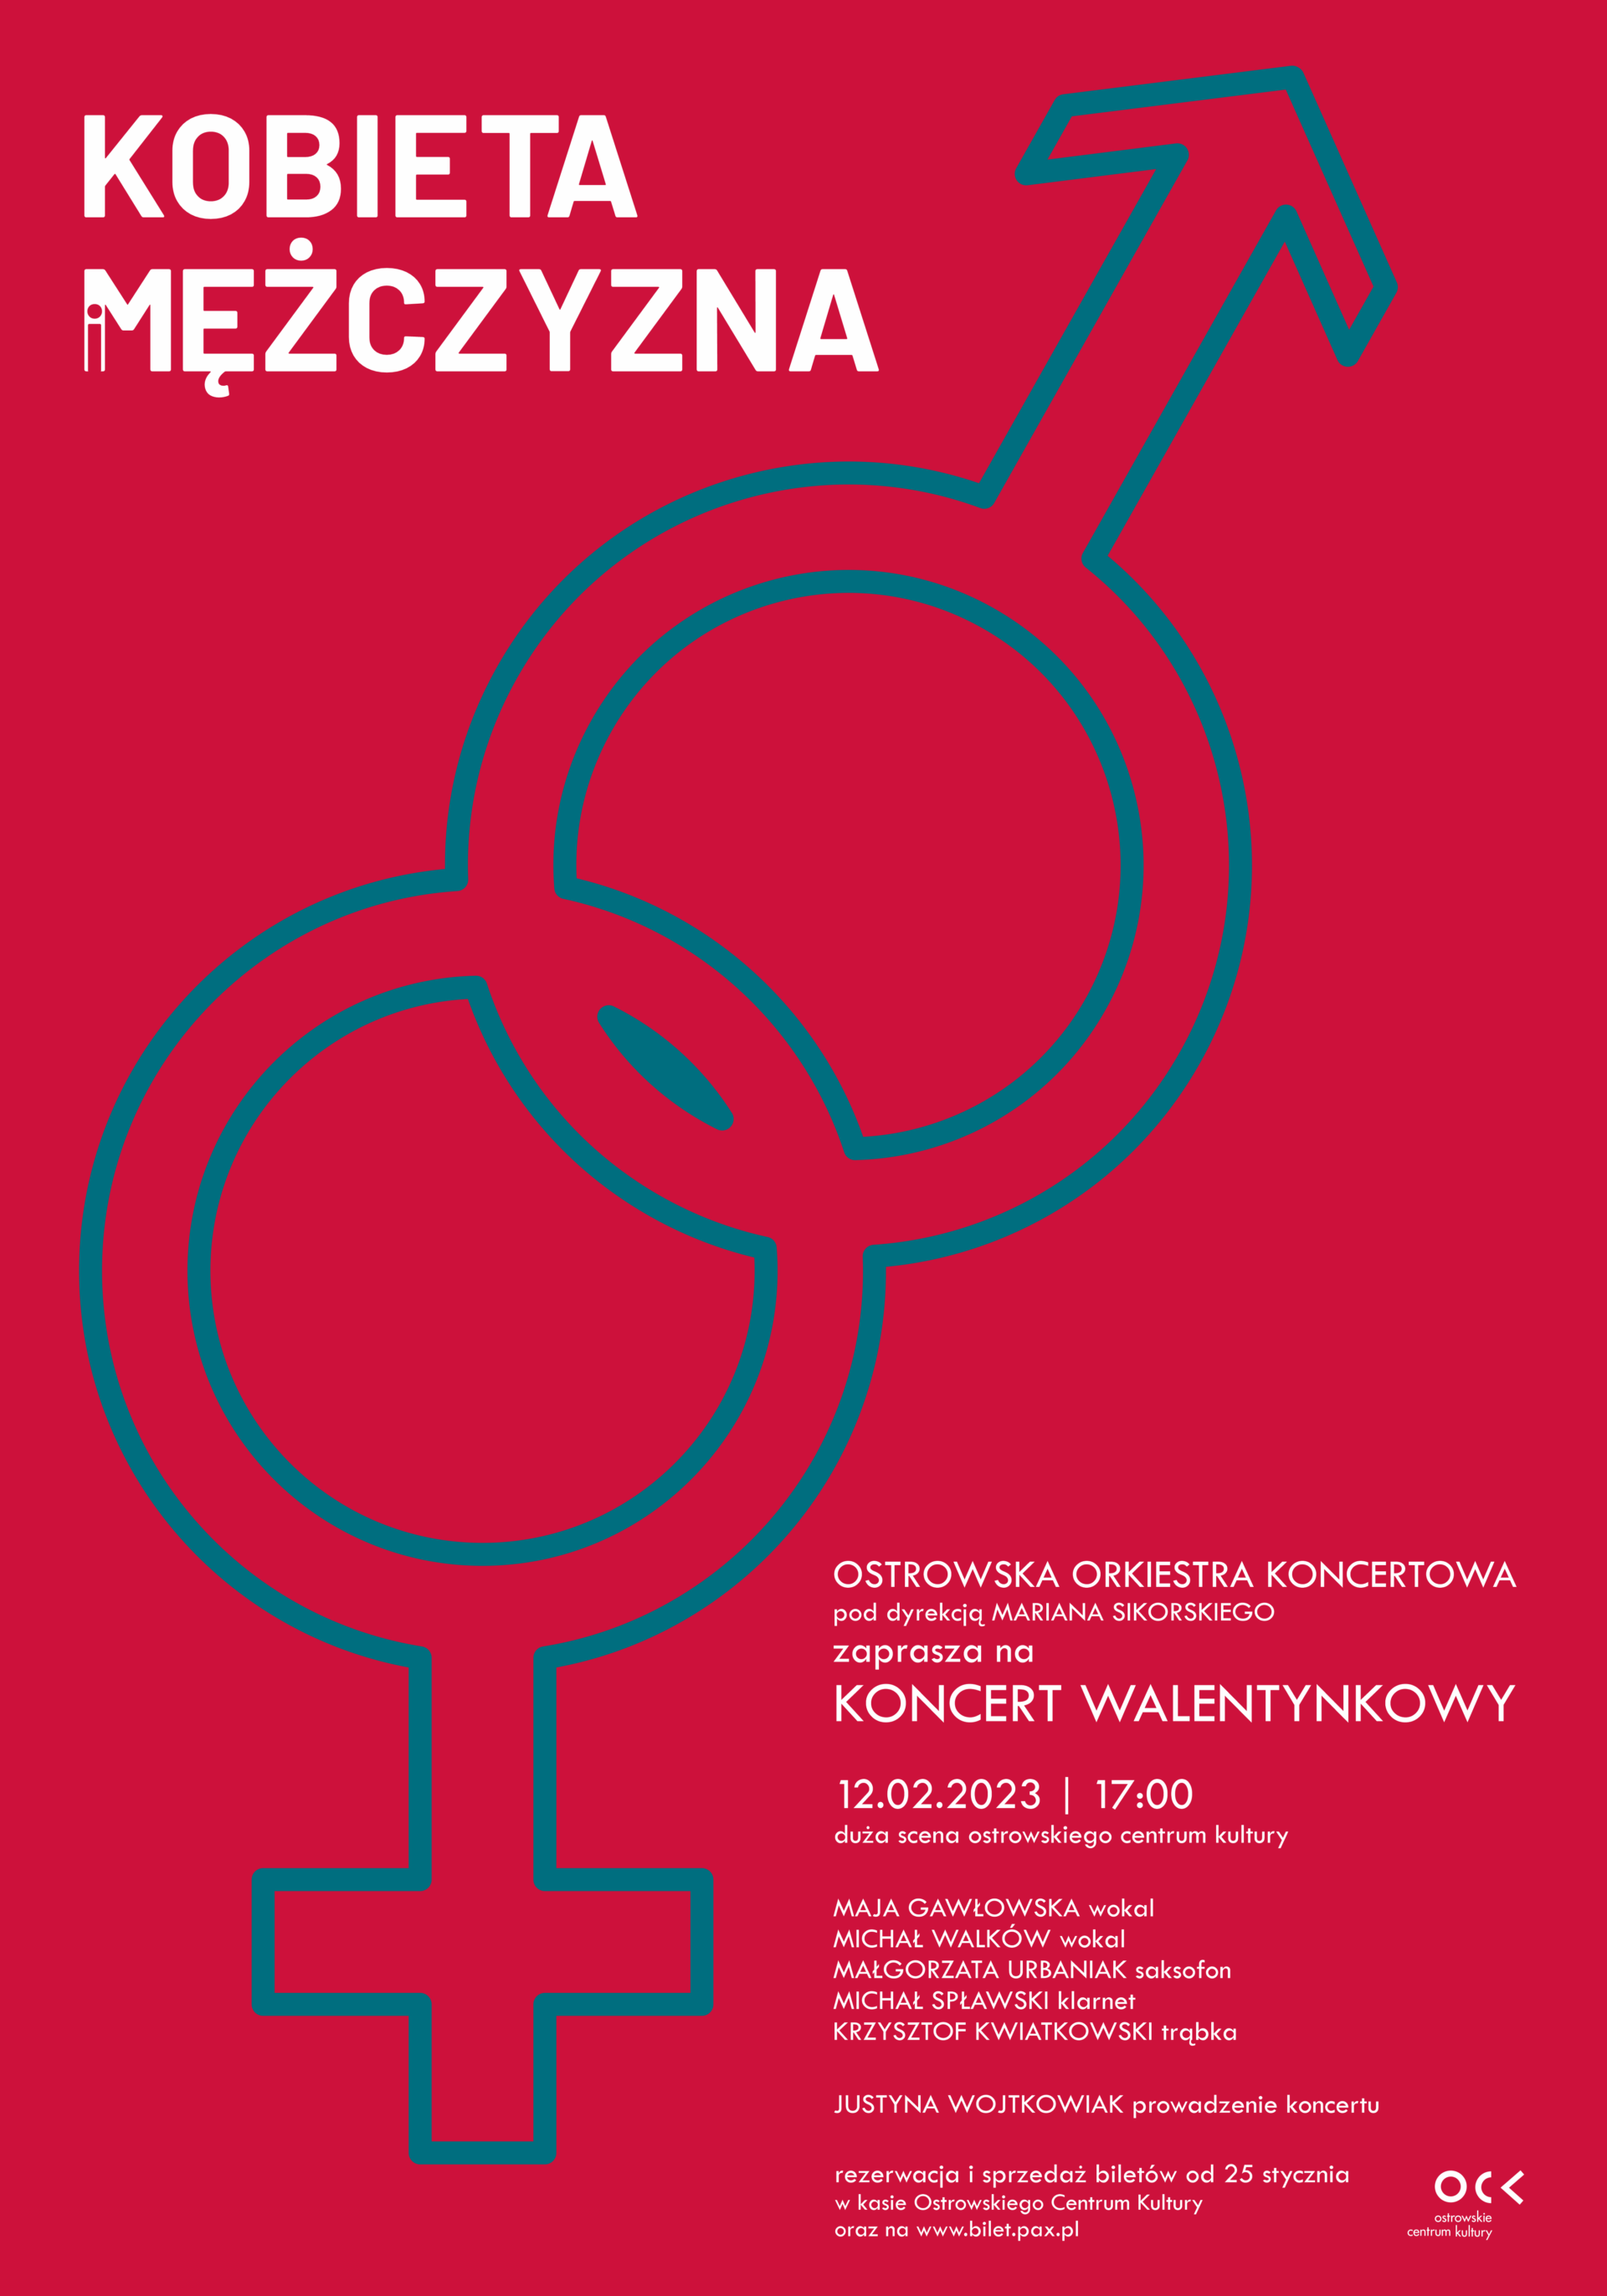 Ostrowska Orkiestra Koncertowa | Kobieta i mężczyzna | koncert walentynkowy